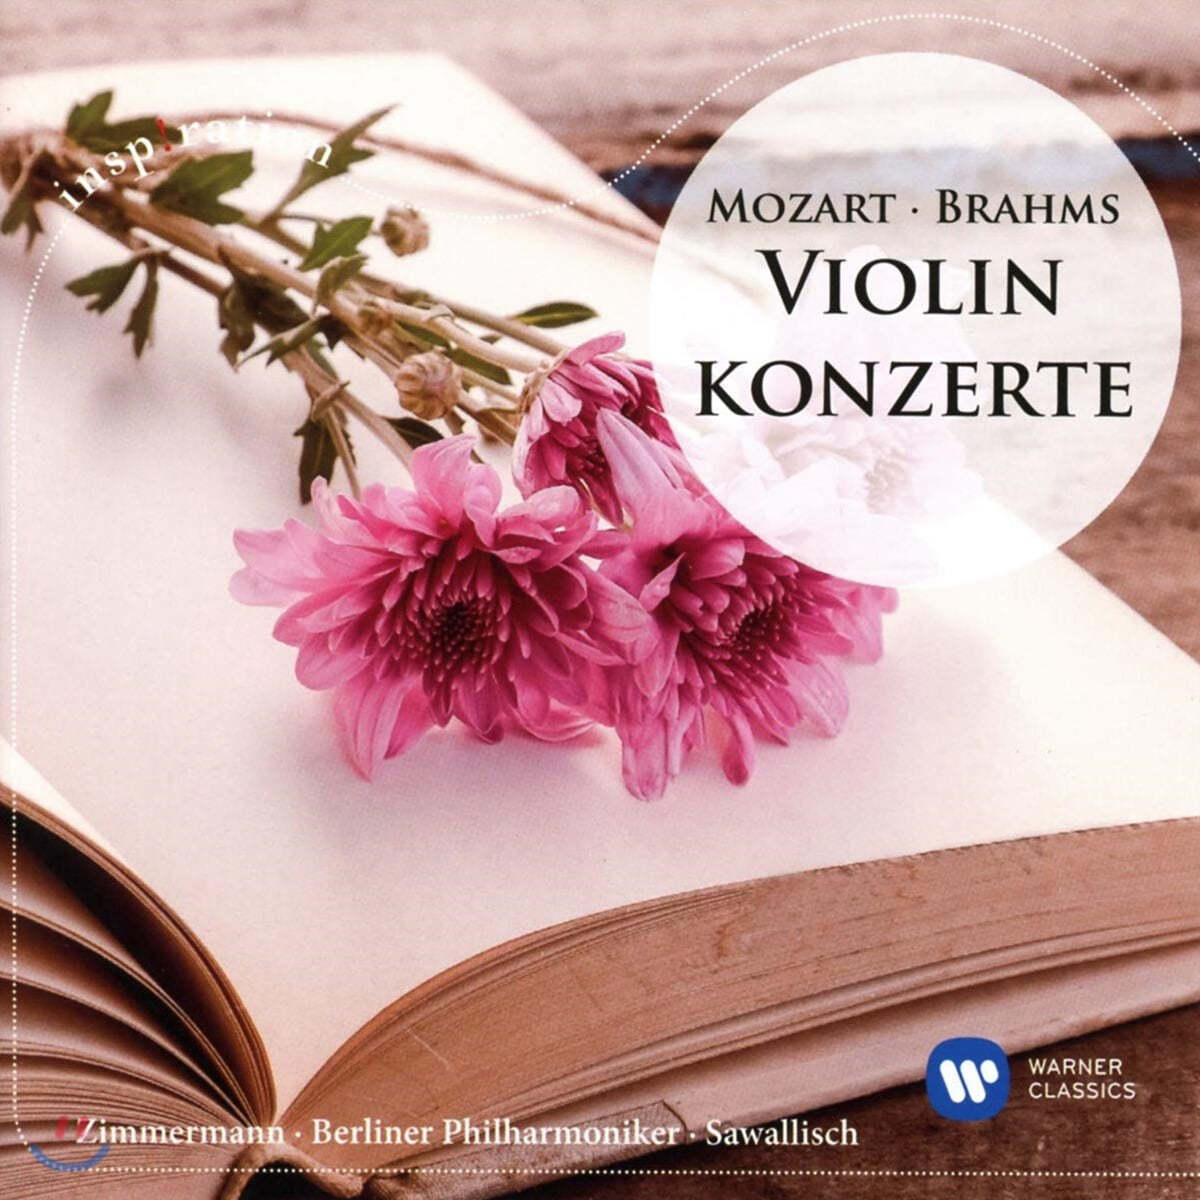 Frank Peter Zimmermann 브람스 / 모차르트: 바이올린 협주곡 - 프랑크 페터 짐머만 (Brahms / Mozart: Violin Concerto)